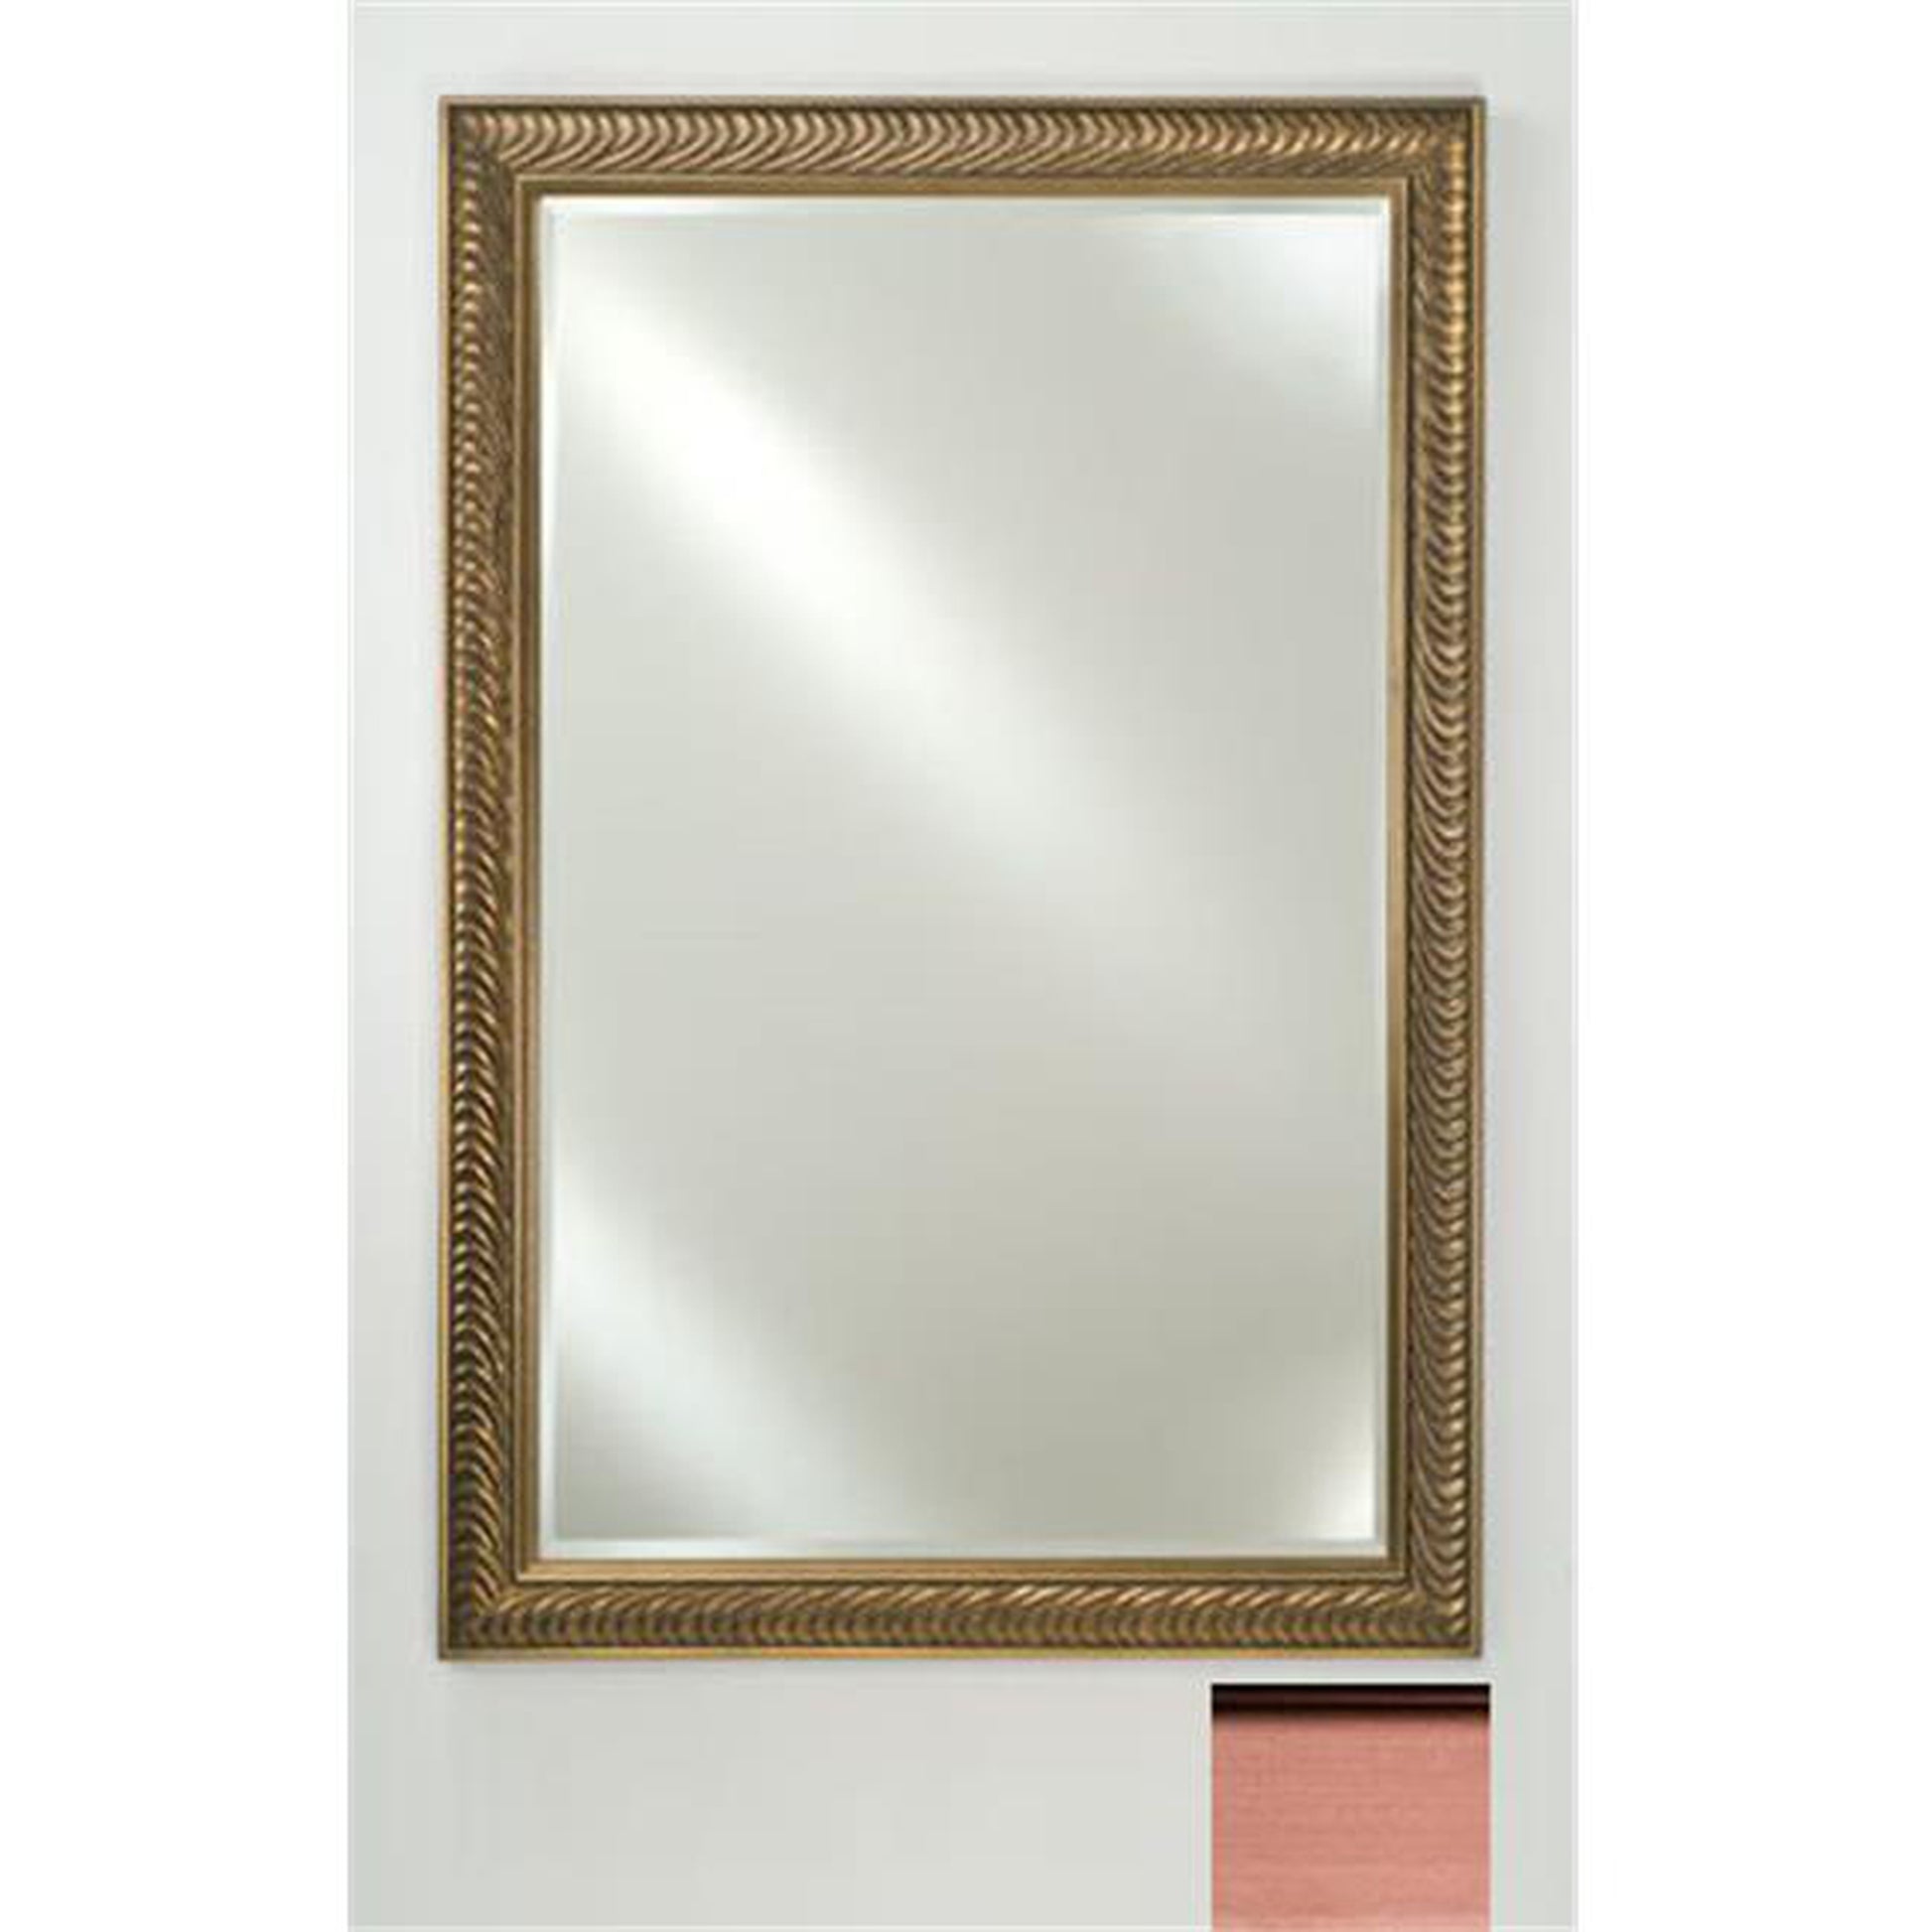 Afina Signature 16" x 22" Soho Brushed Bronze Framed Mirror With Beveled Edge